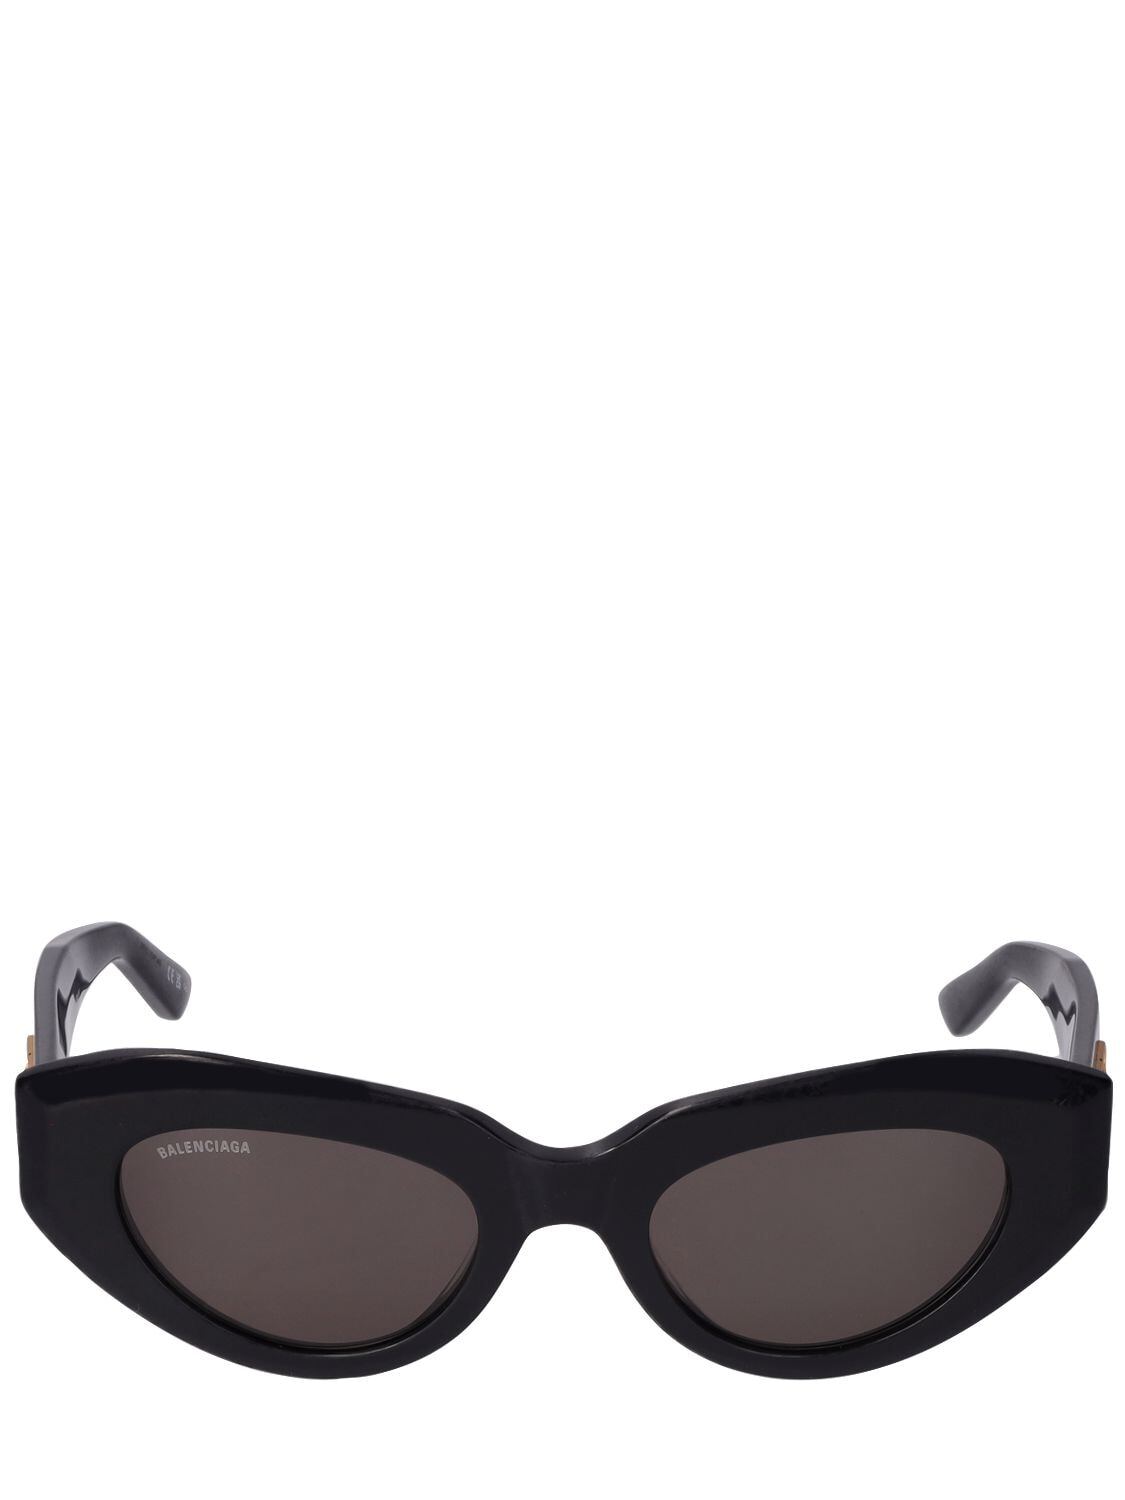 BALENCIAGA 0236s Rive Gauche Acetate Sunglasses in black